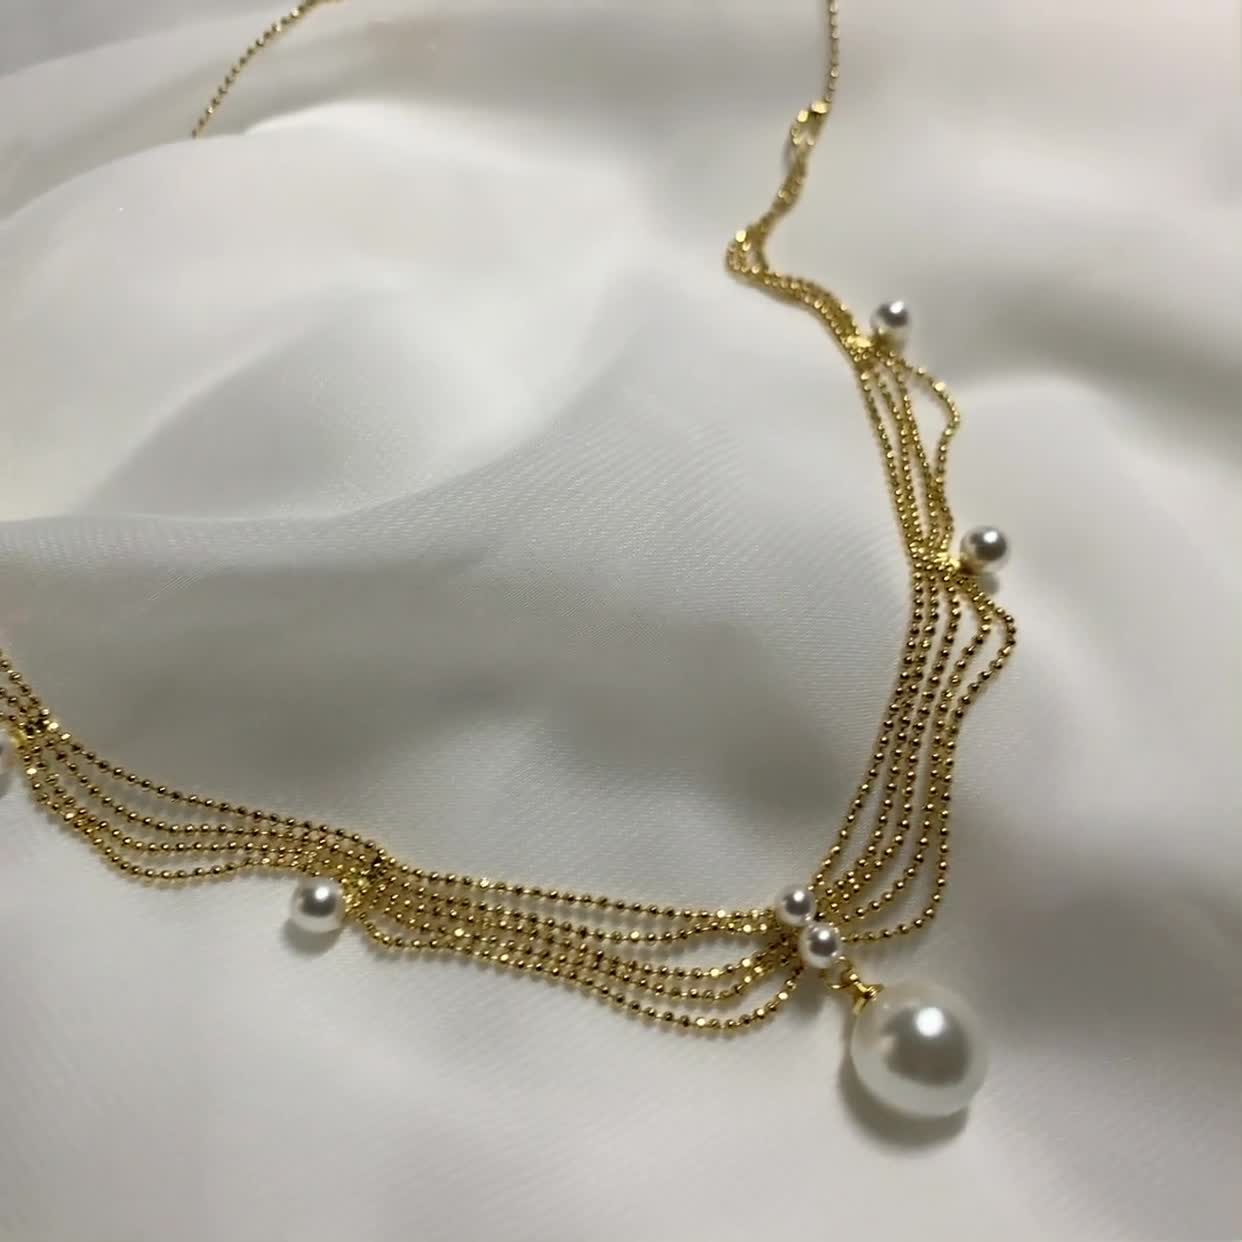 Sexy Bodychain Harness Jewelry, Dainty Crystal Chest Necklace